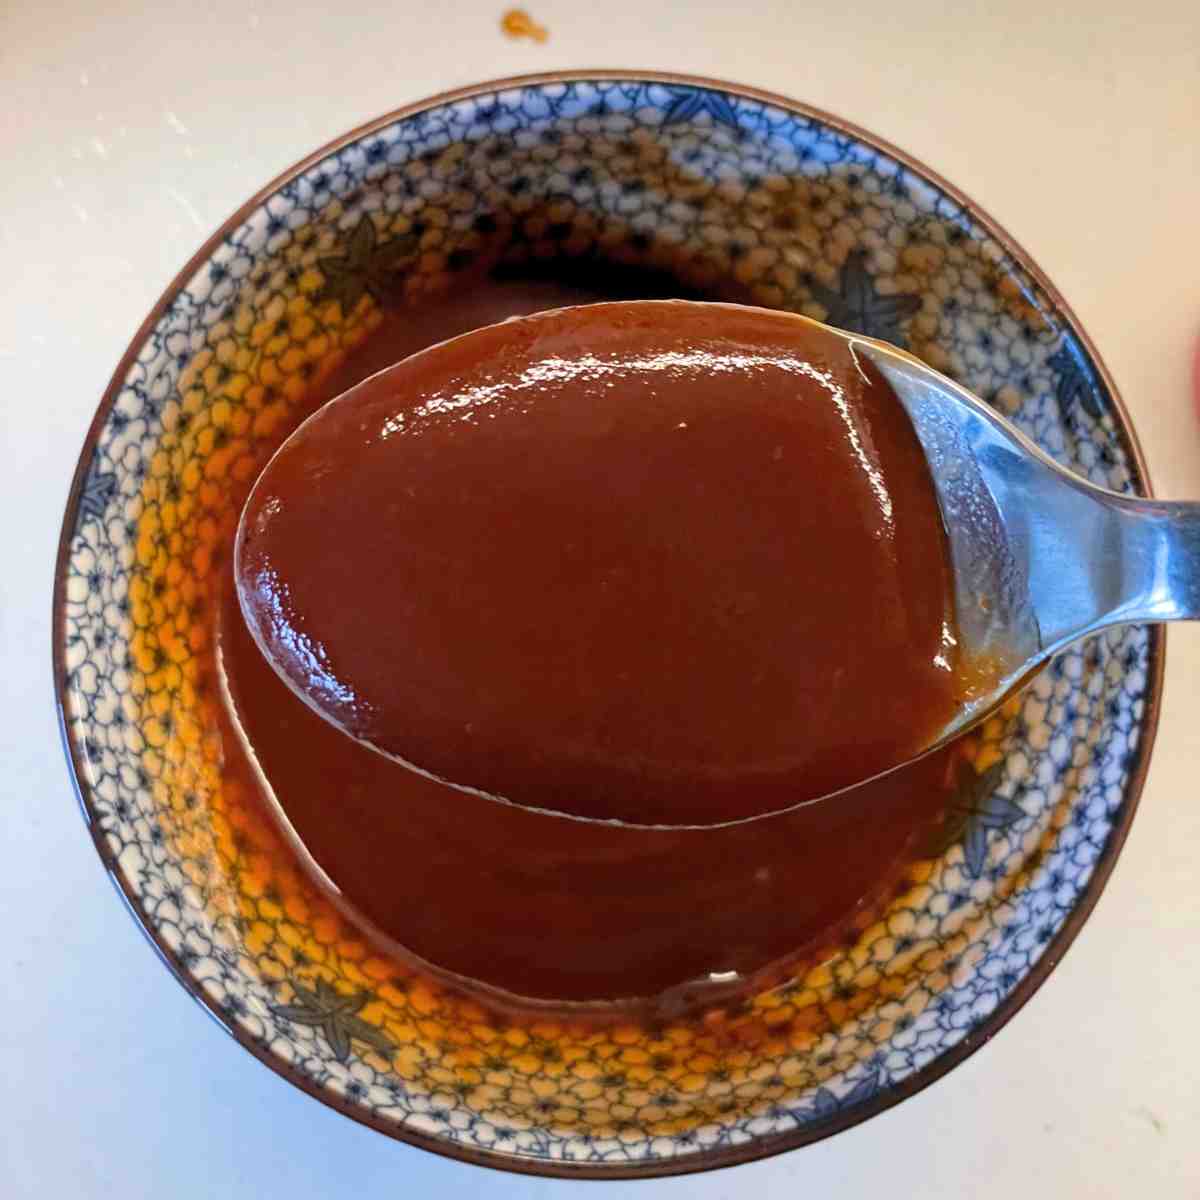 Homemade tonkatsu sauce